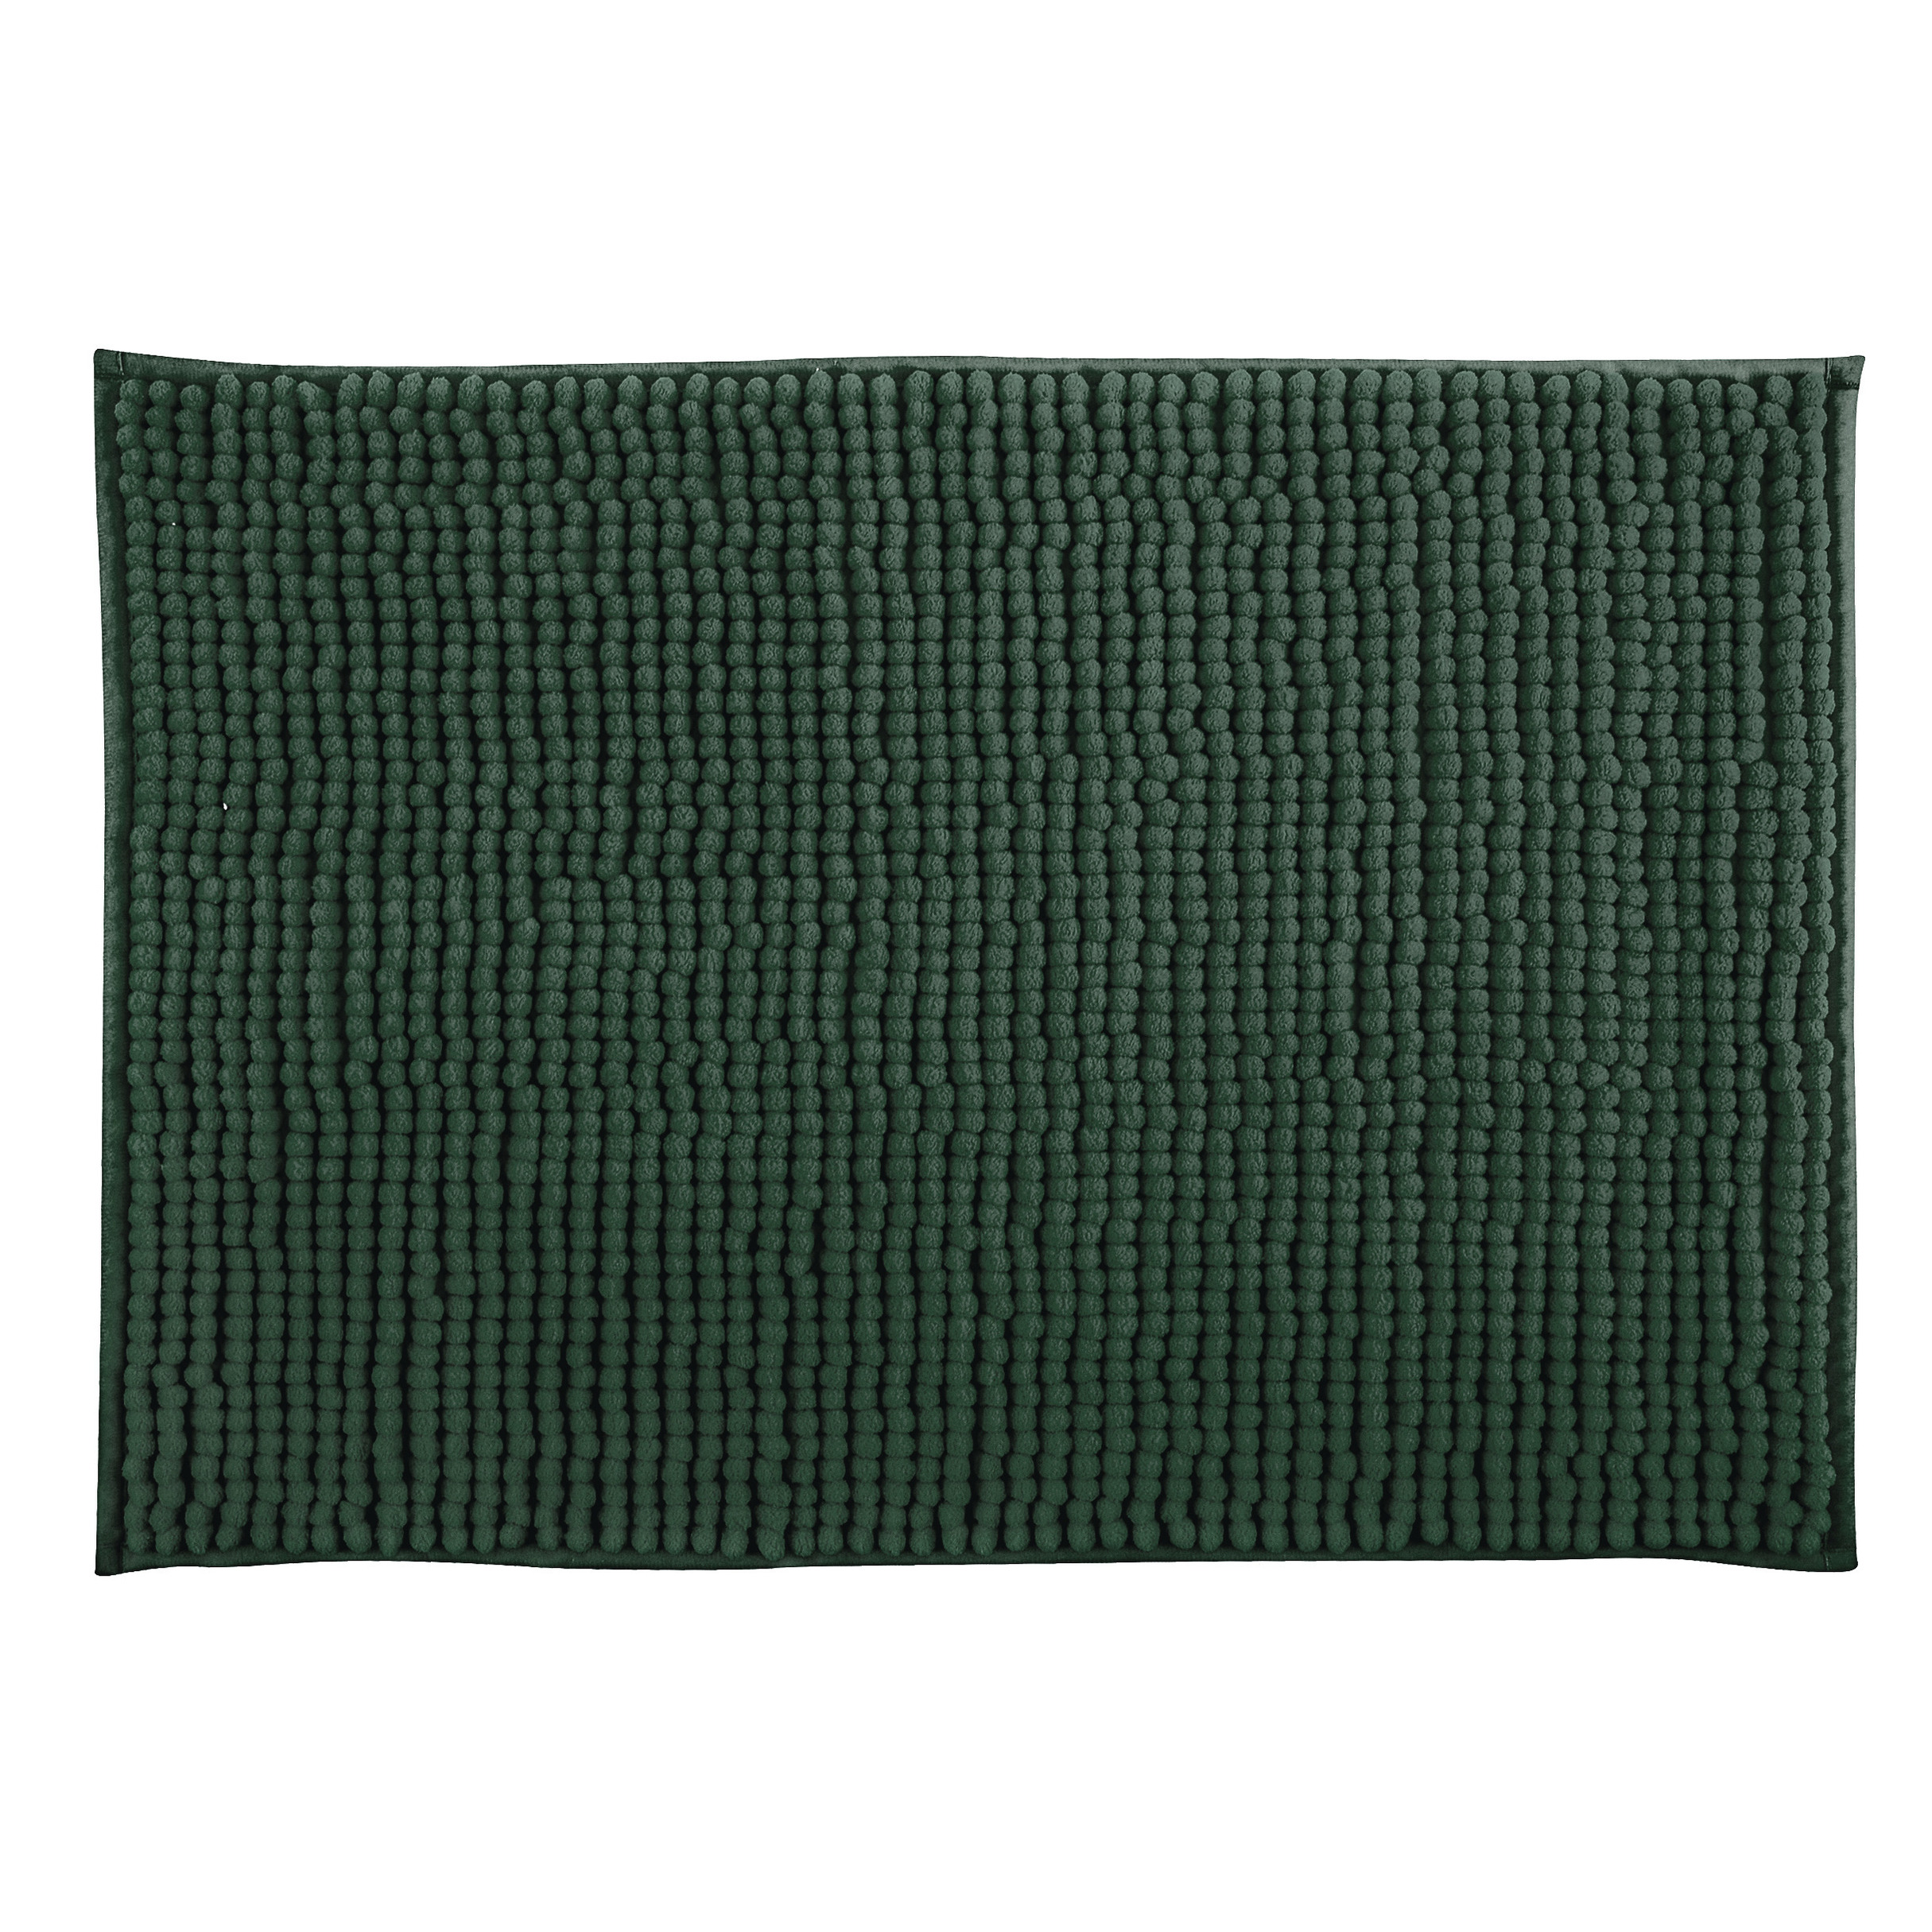 MSV Badkamerkleedje-badmat tapijt voor op de vloer donkergroen 40 x 60 cm